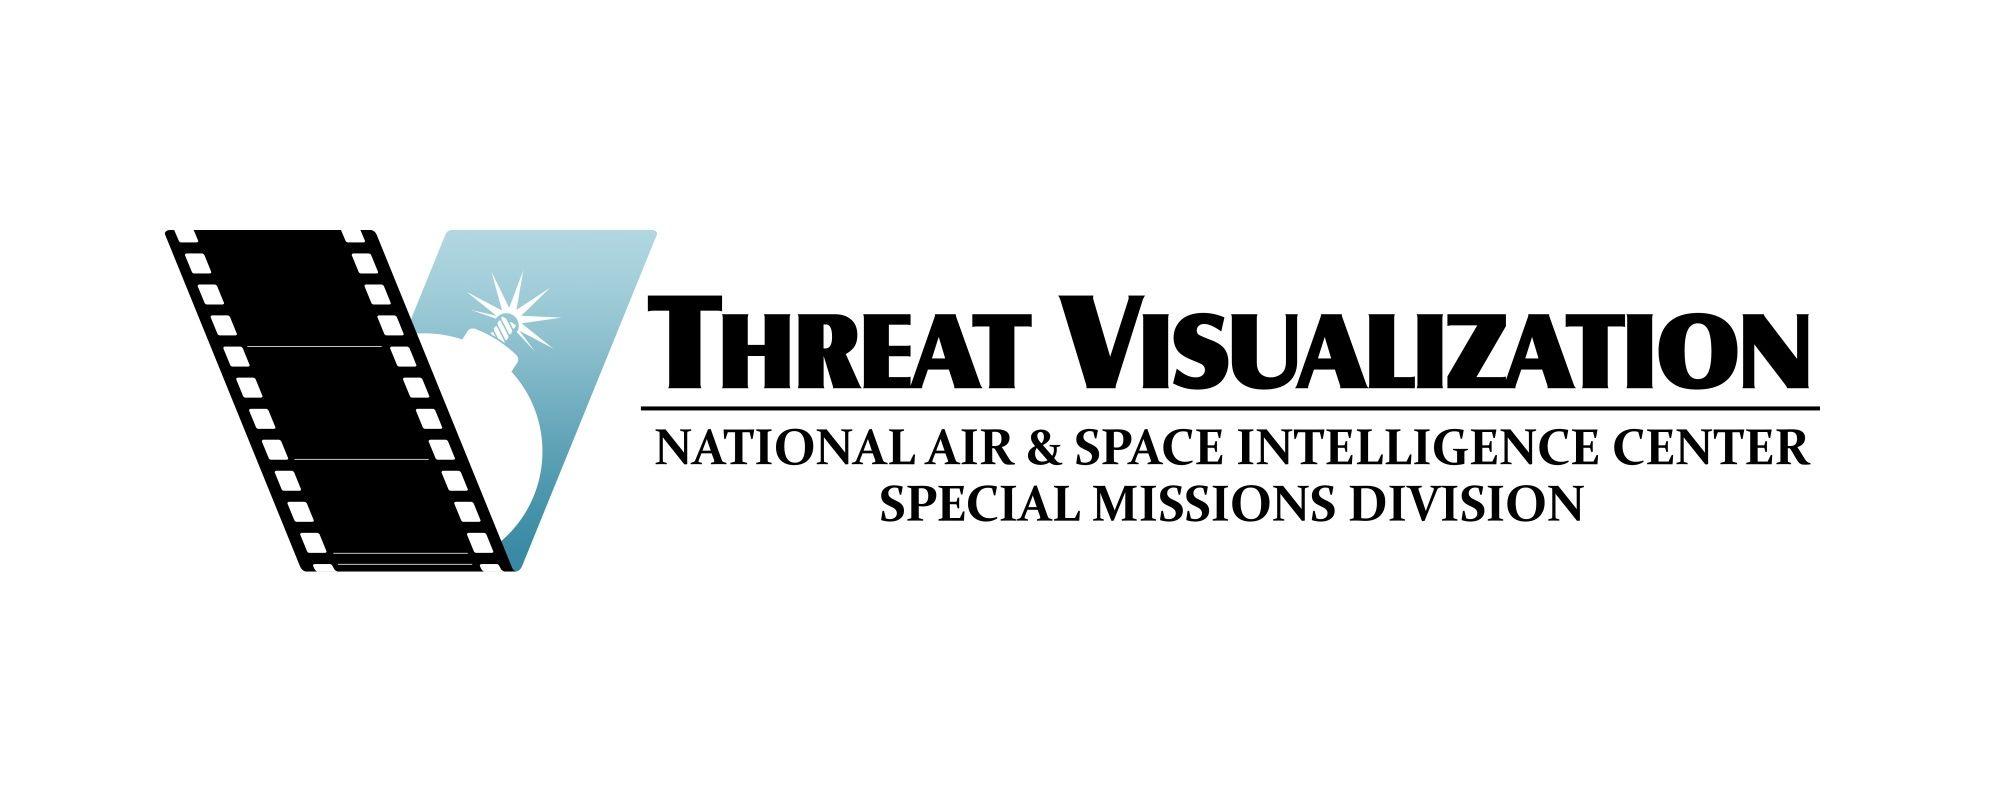 Nasic Logo - DVIDS - Images - NASIC Threat Visualization - Logo [Image 3 of 4]